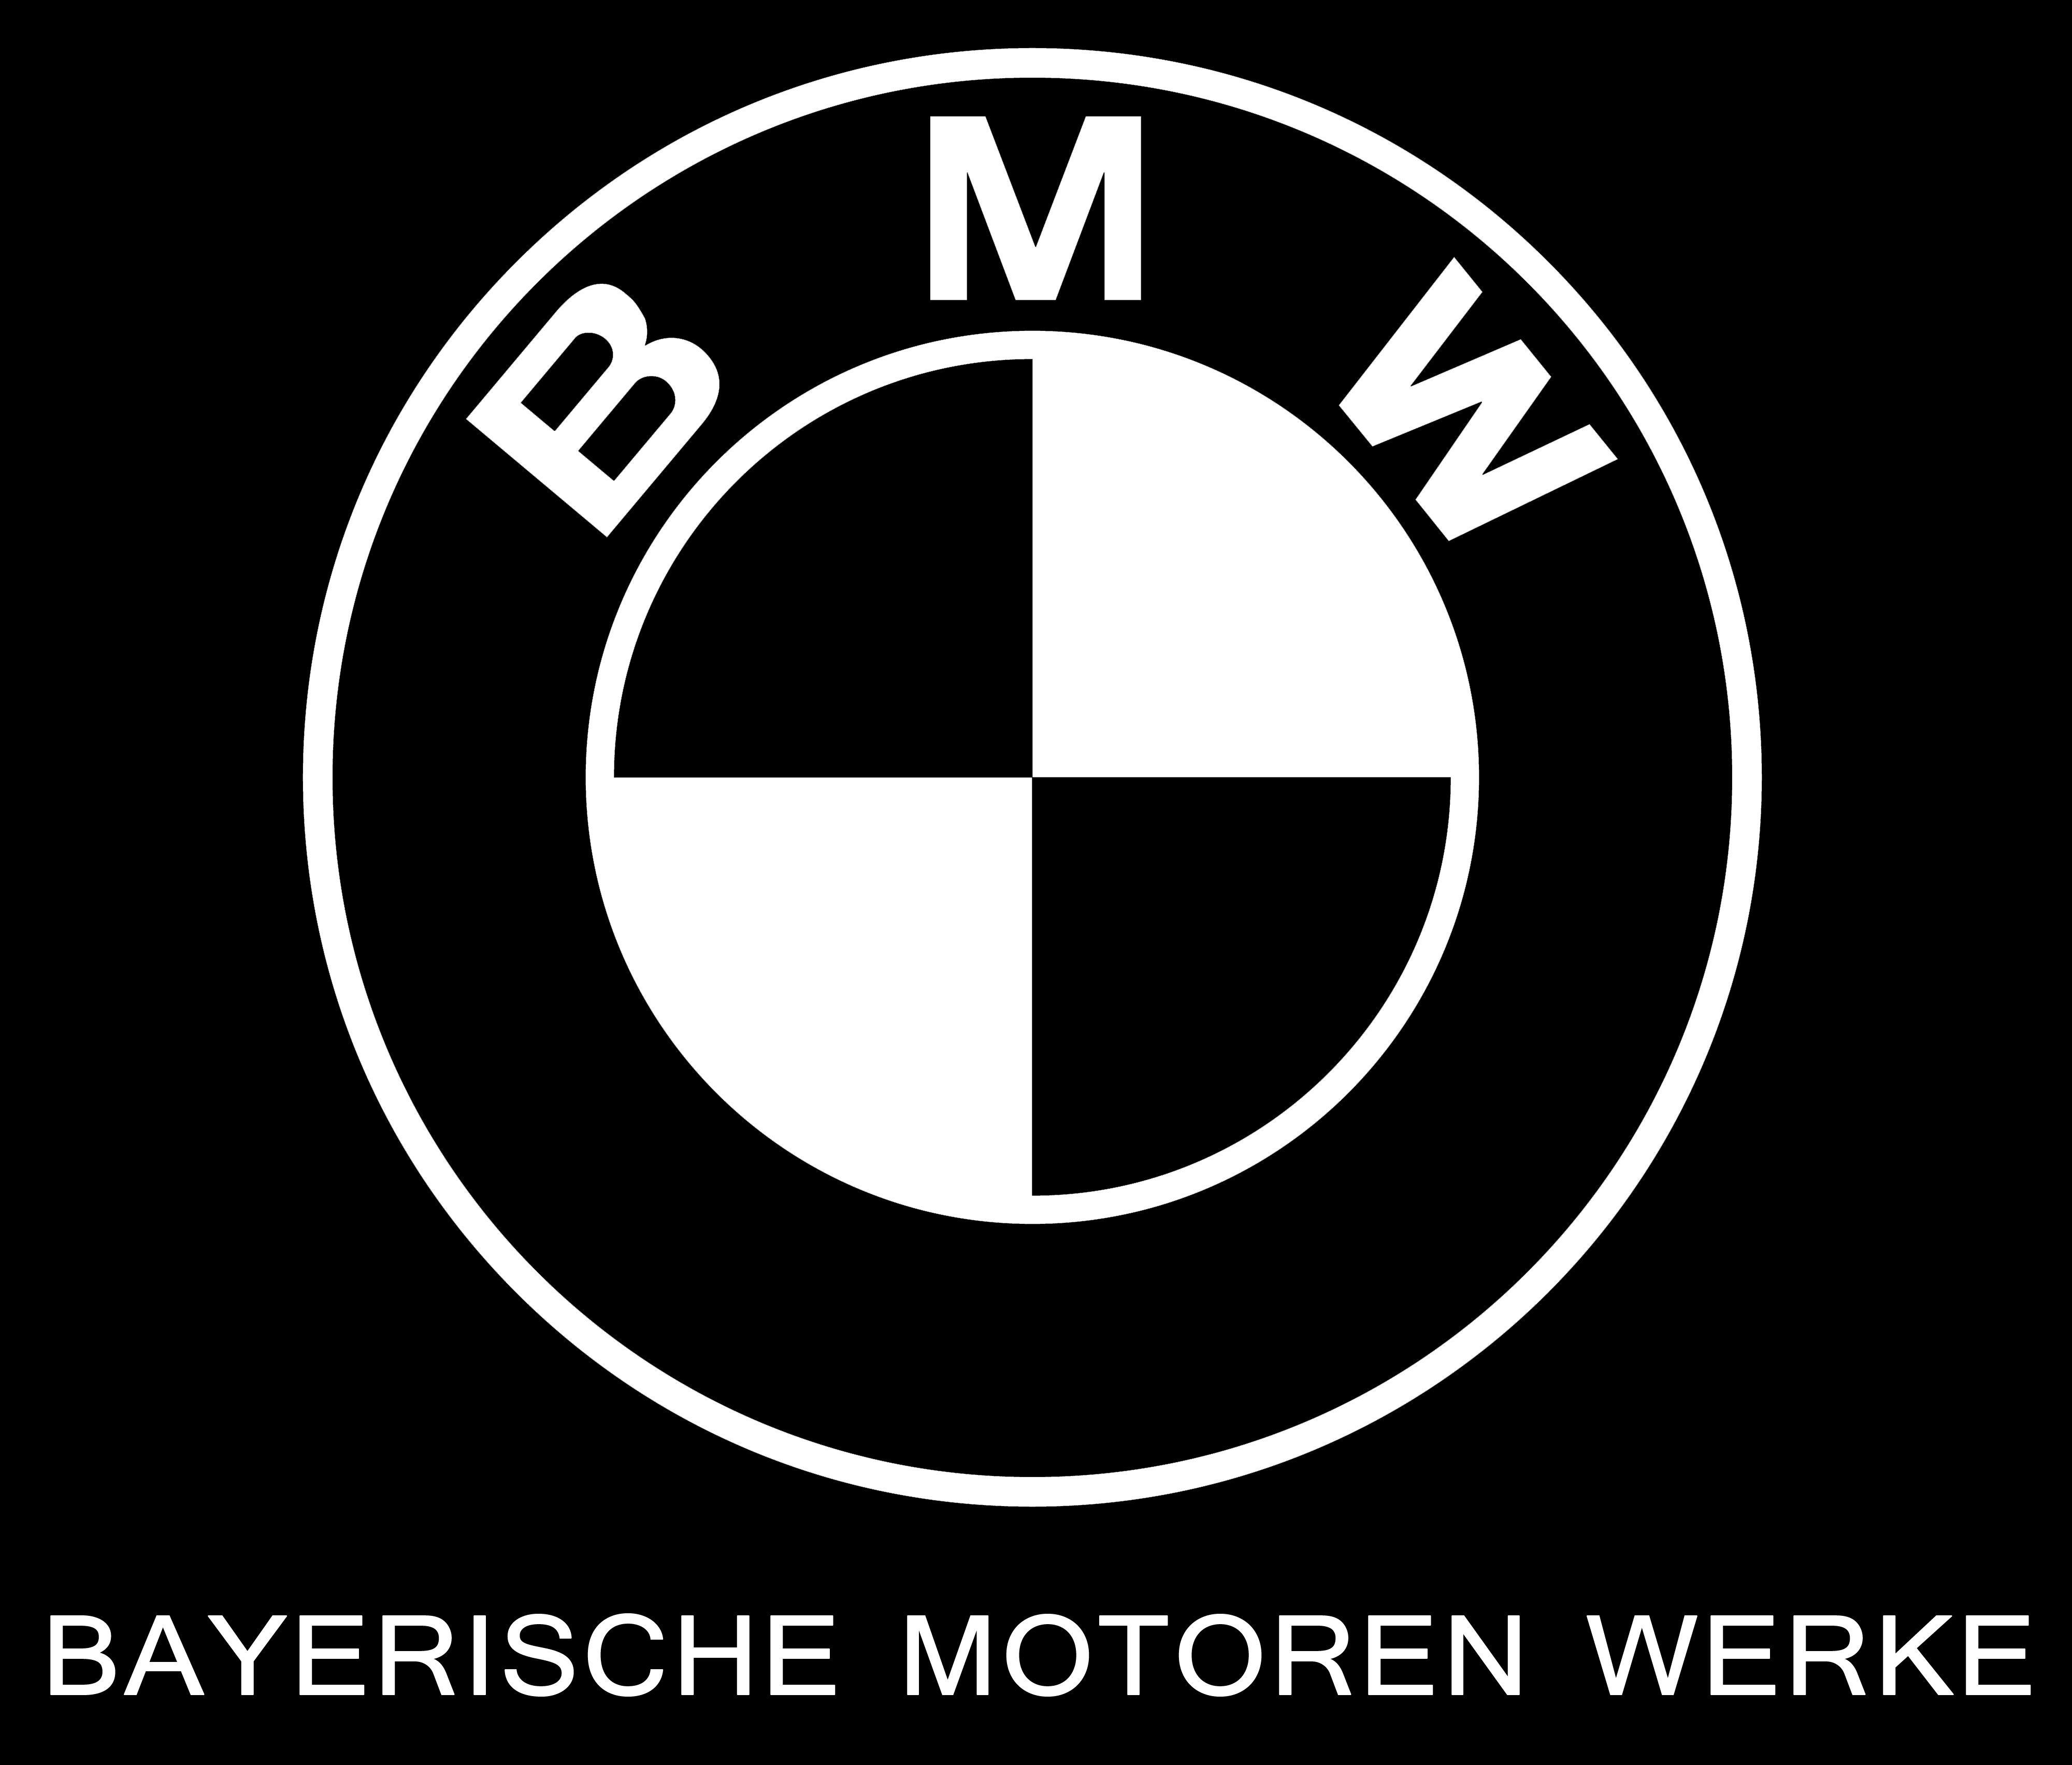 New BMW Logo - Bmw new Logos